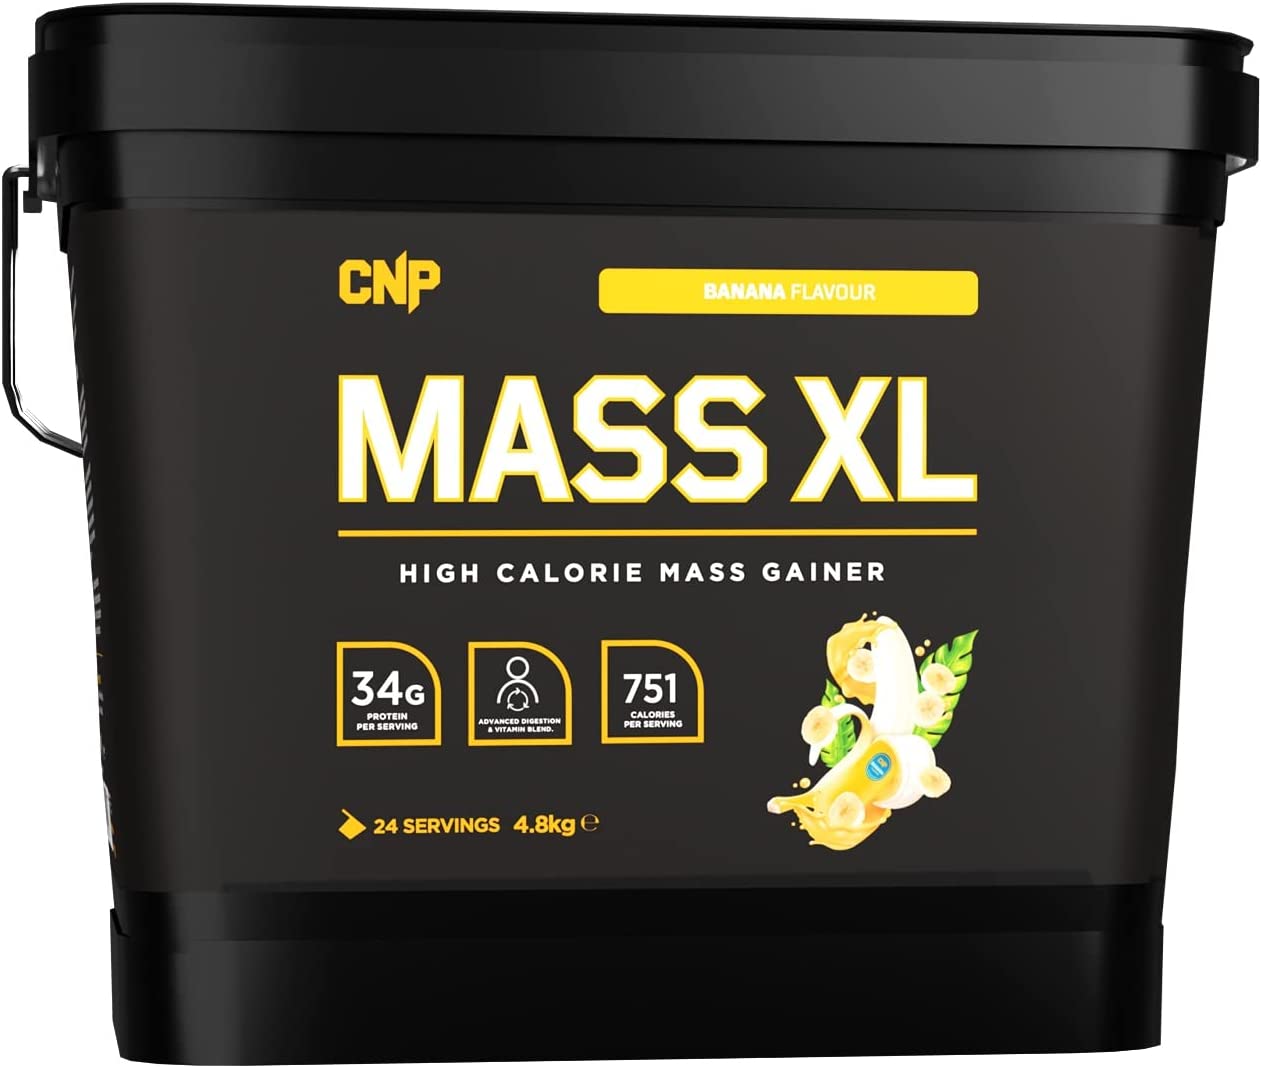 CNP Professional Mass 4XL 4.8kg